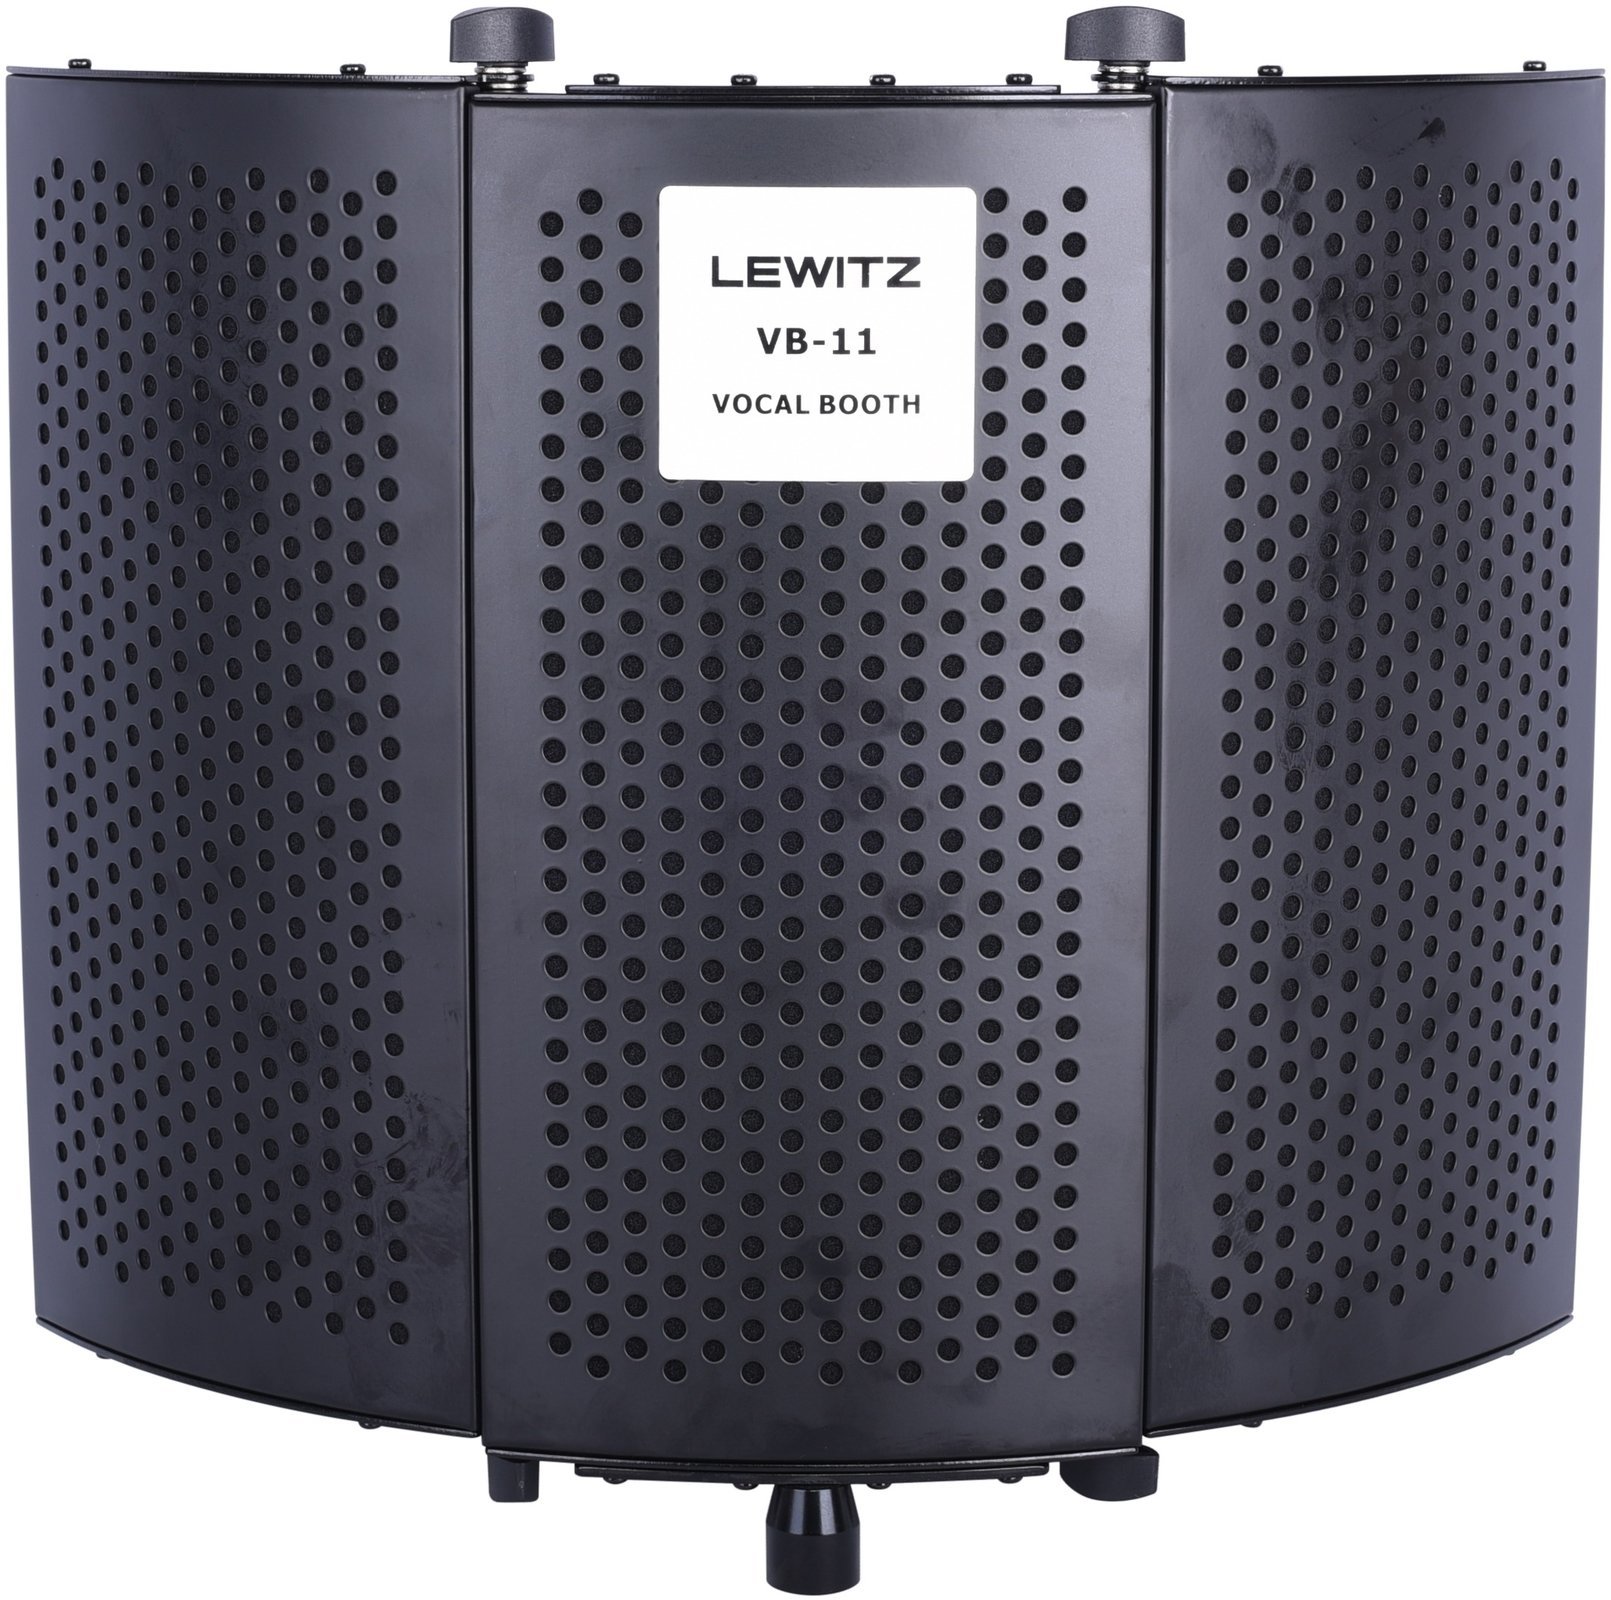 Portable akustische Abschirmung Lewitz VB-11